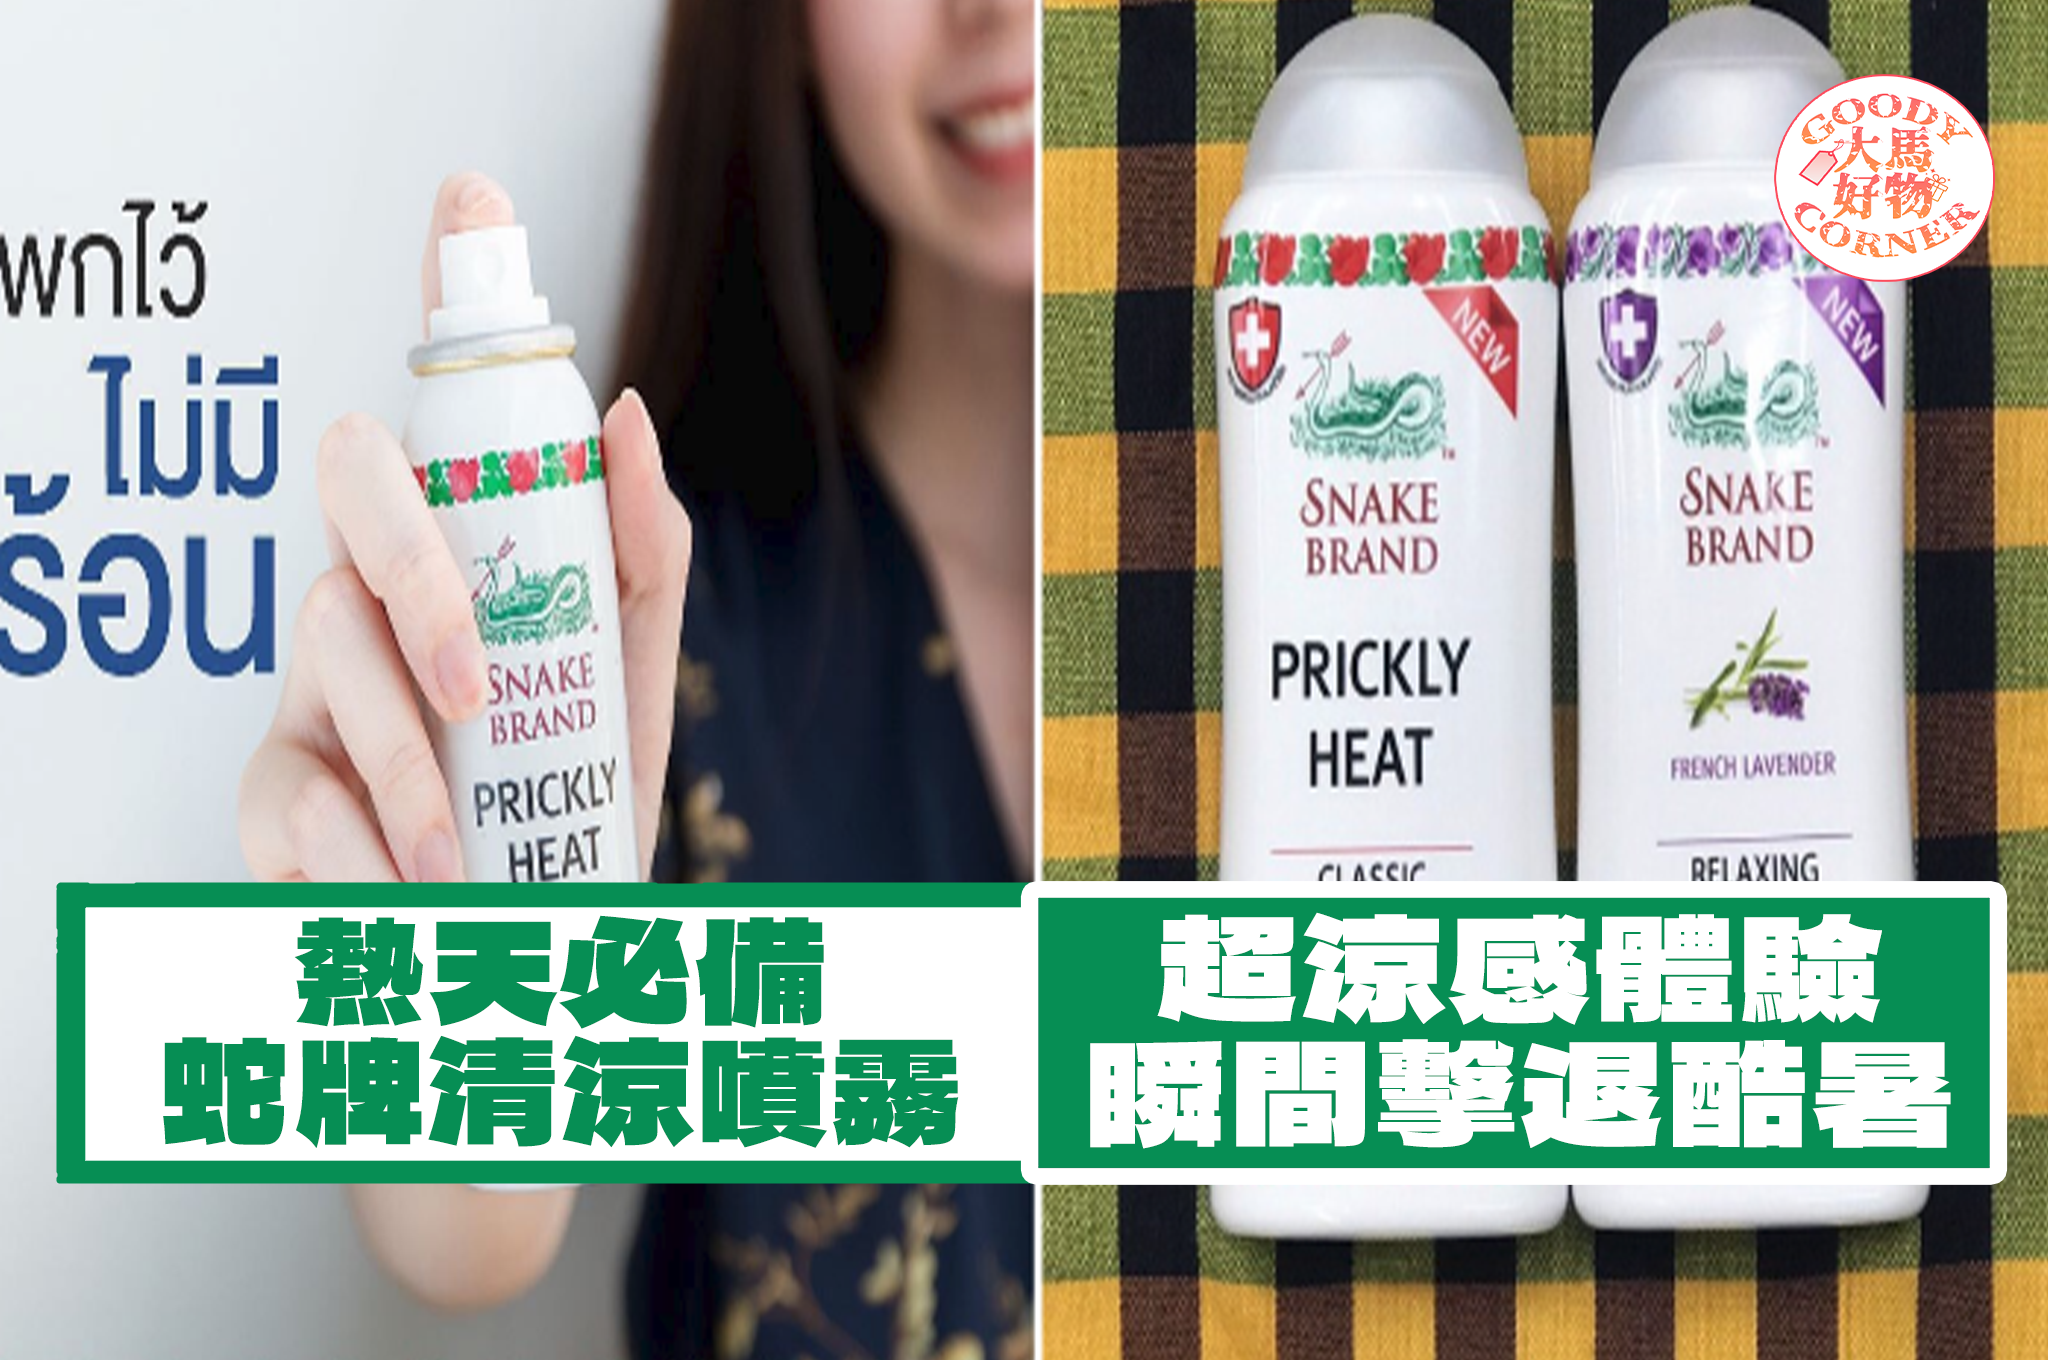 snake brand prickly heat body spray main